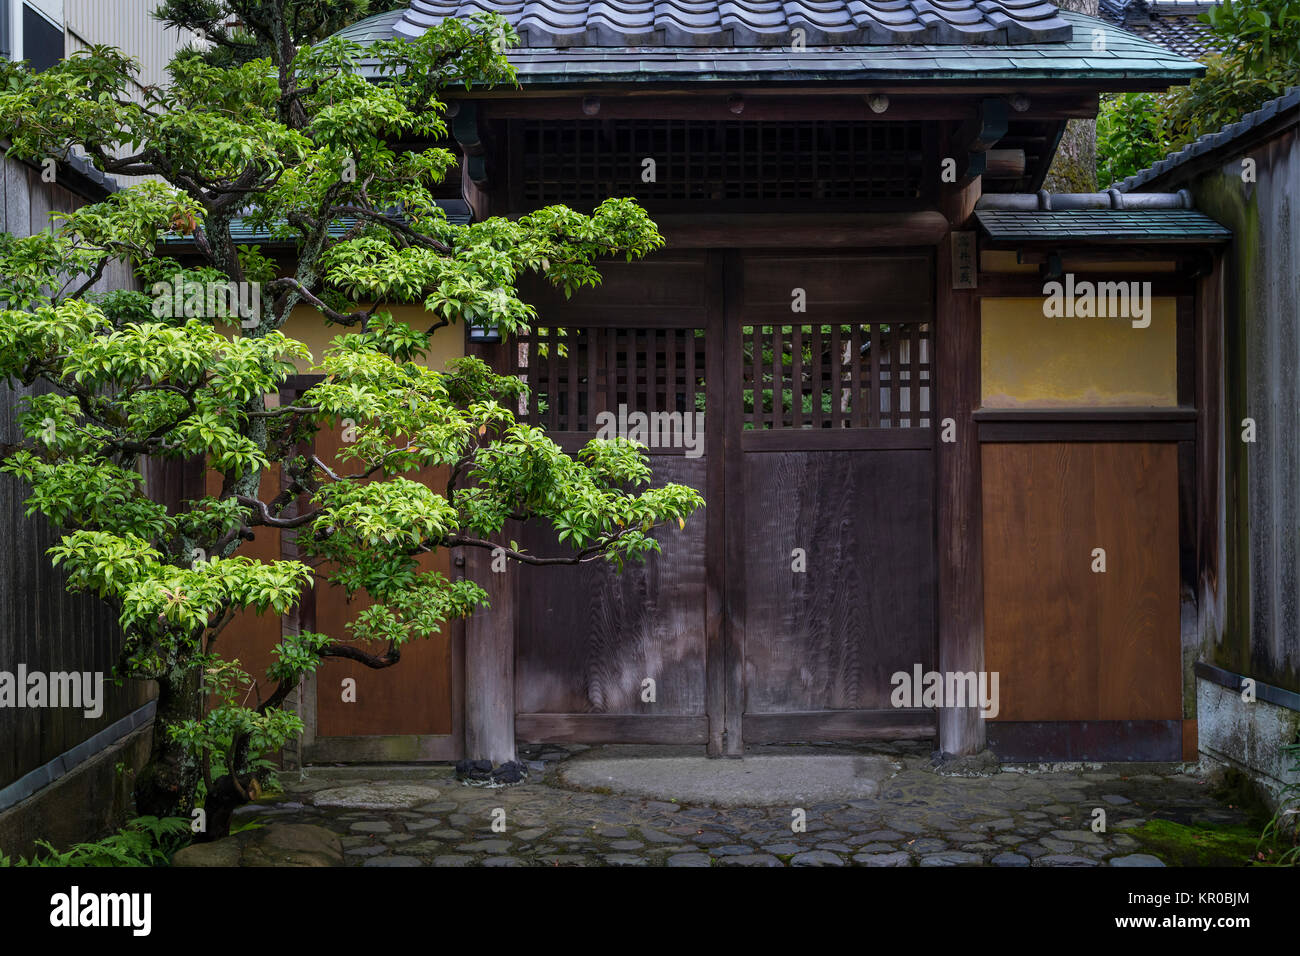 Kanazawa - Giappone, giugno 8, 2017: ingresso di una casa samurai in Nagamachi,lo storico quartiere dei samurai a Kanazawa Foto Stock